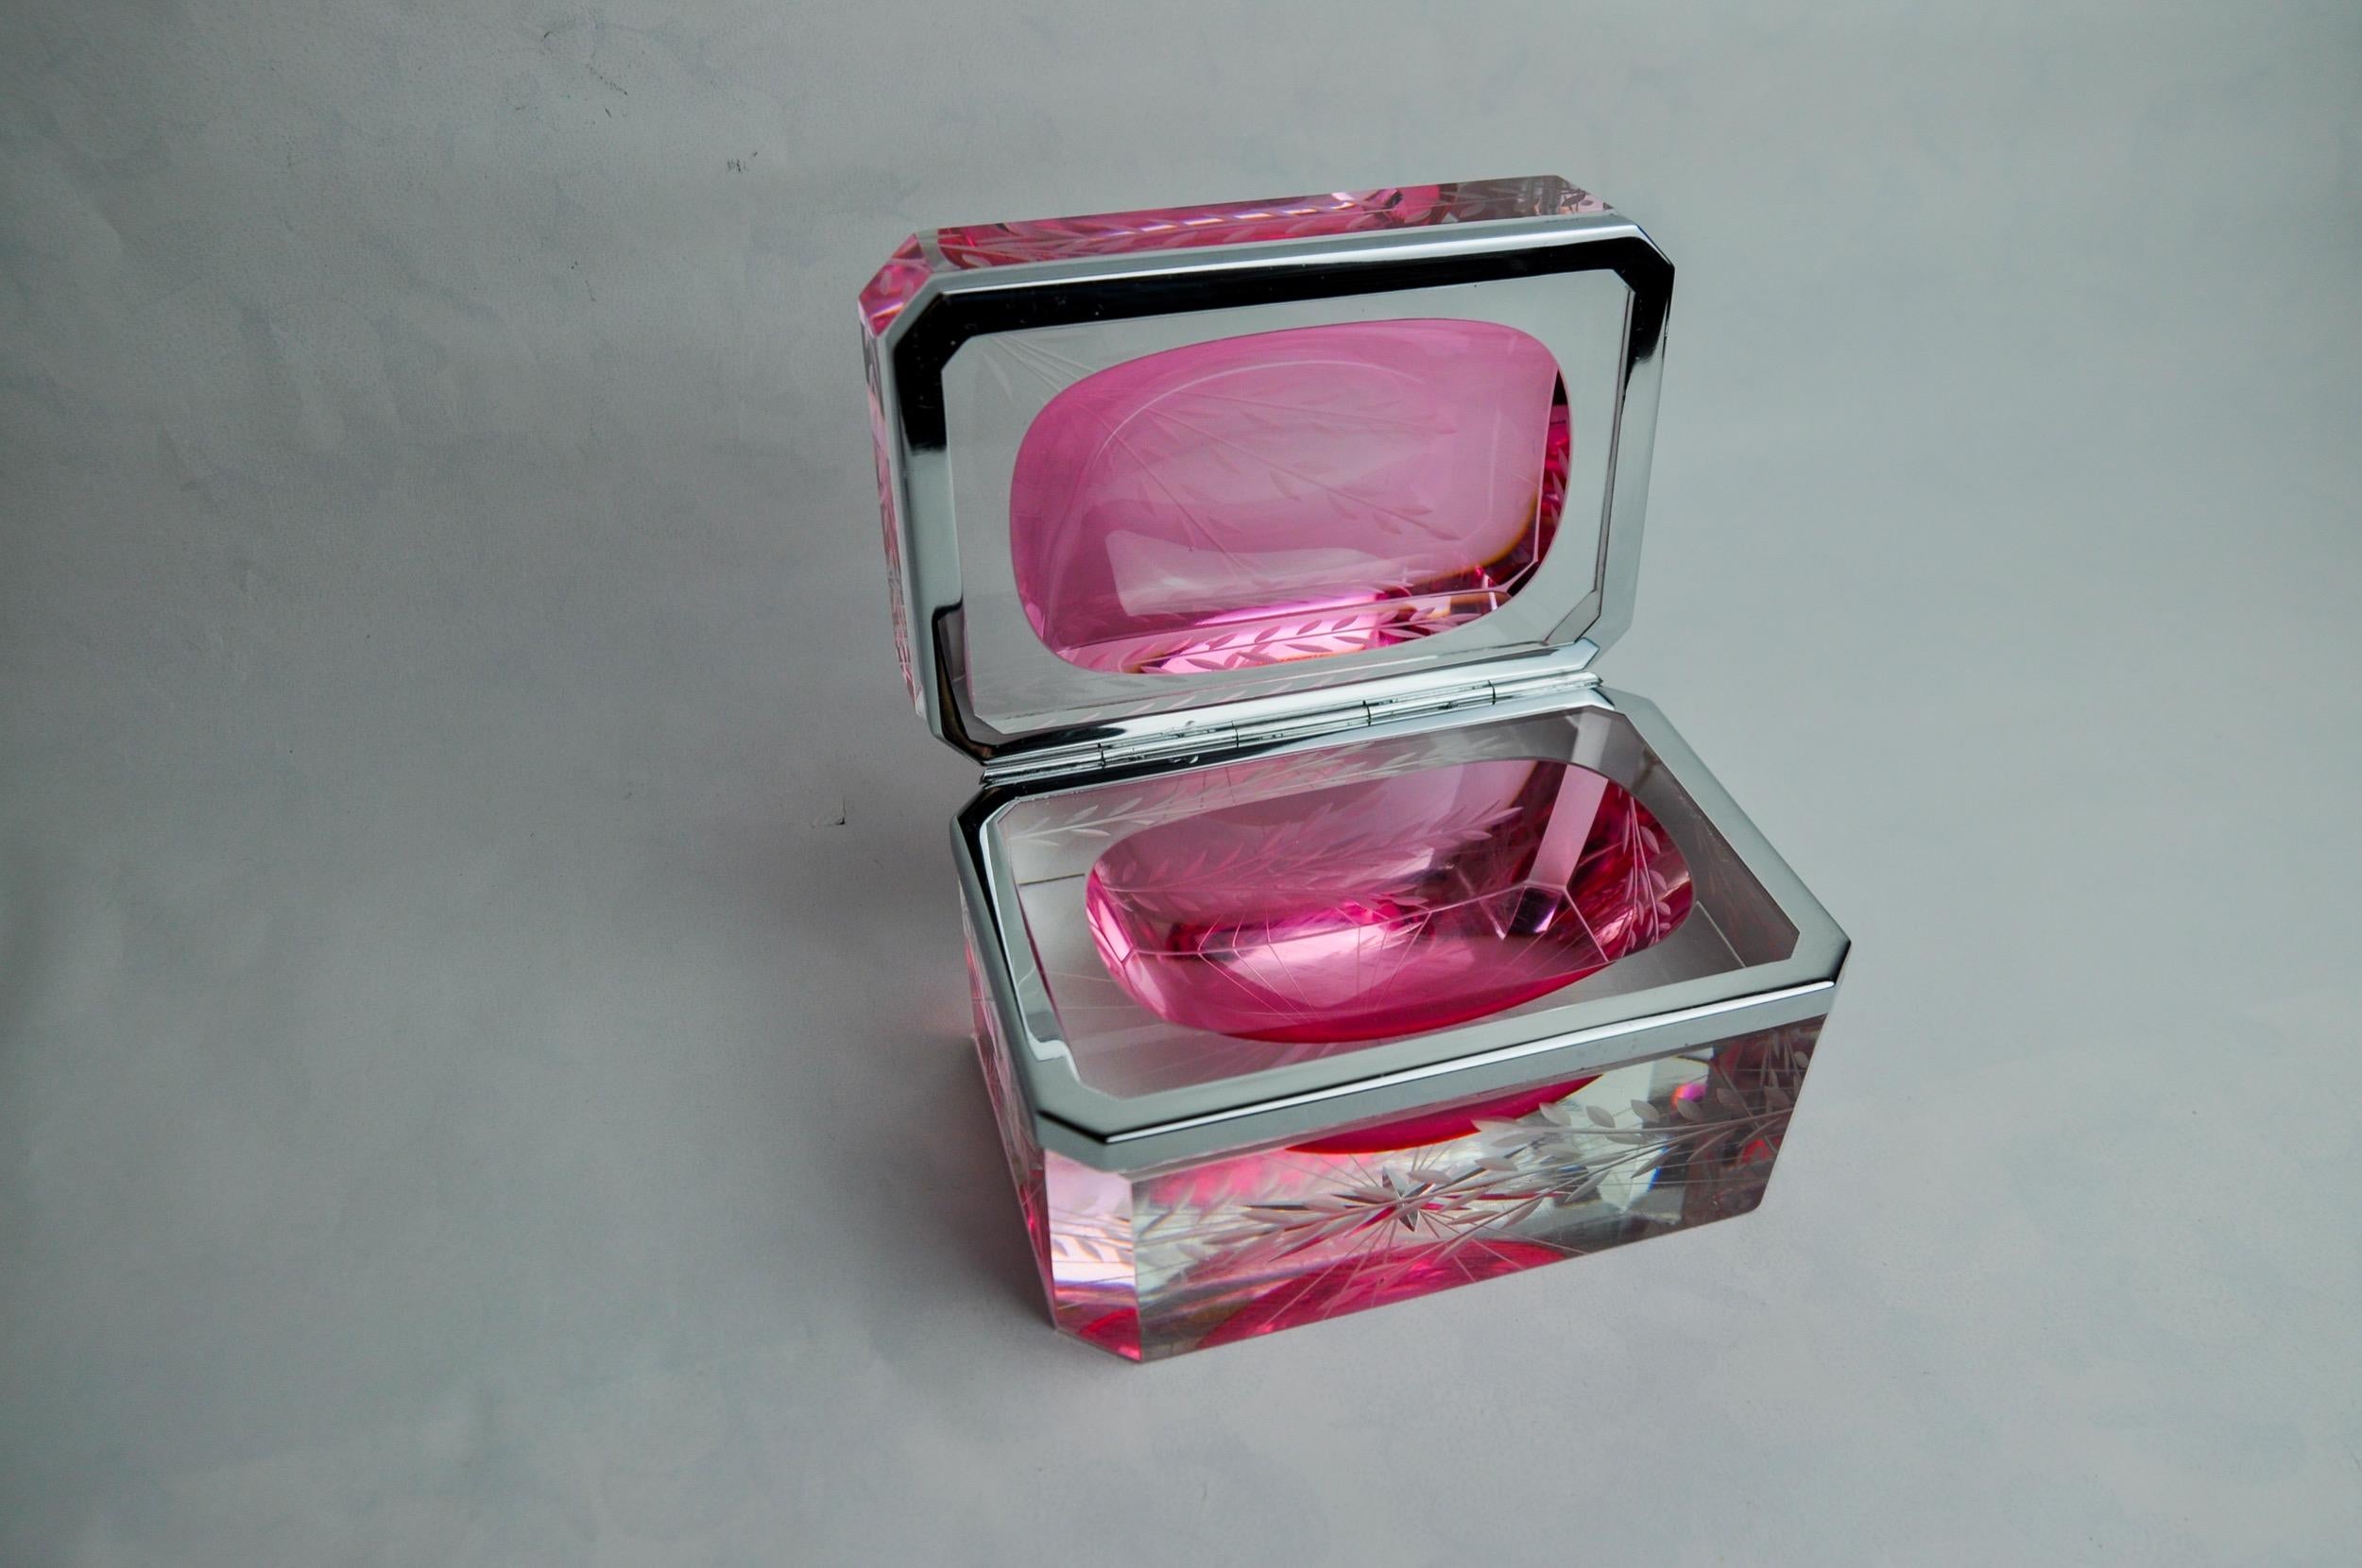 Superbe et rare boîte à sommerso rose conçue et fabriquée par Alessandro Mandruzzato à Murano dans les années 1960. Un travail du verre exceptionnel selon la technique du sommerso (superposition de couches de verre en fusion) avec des motifs floraux